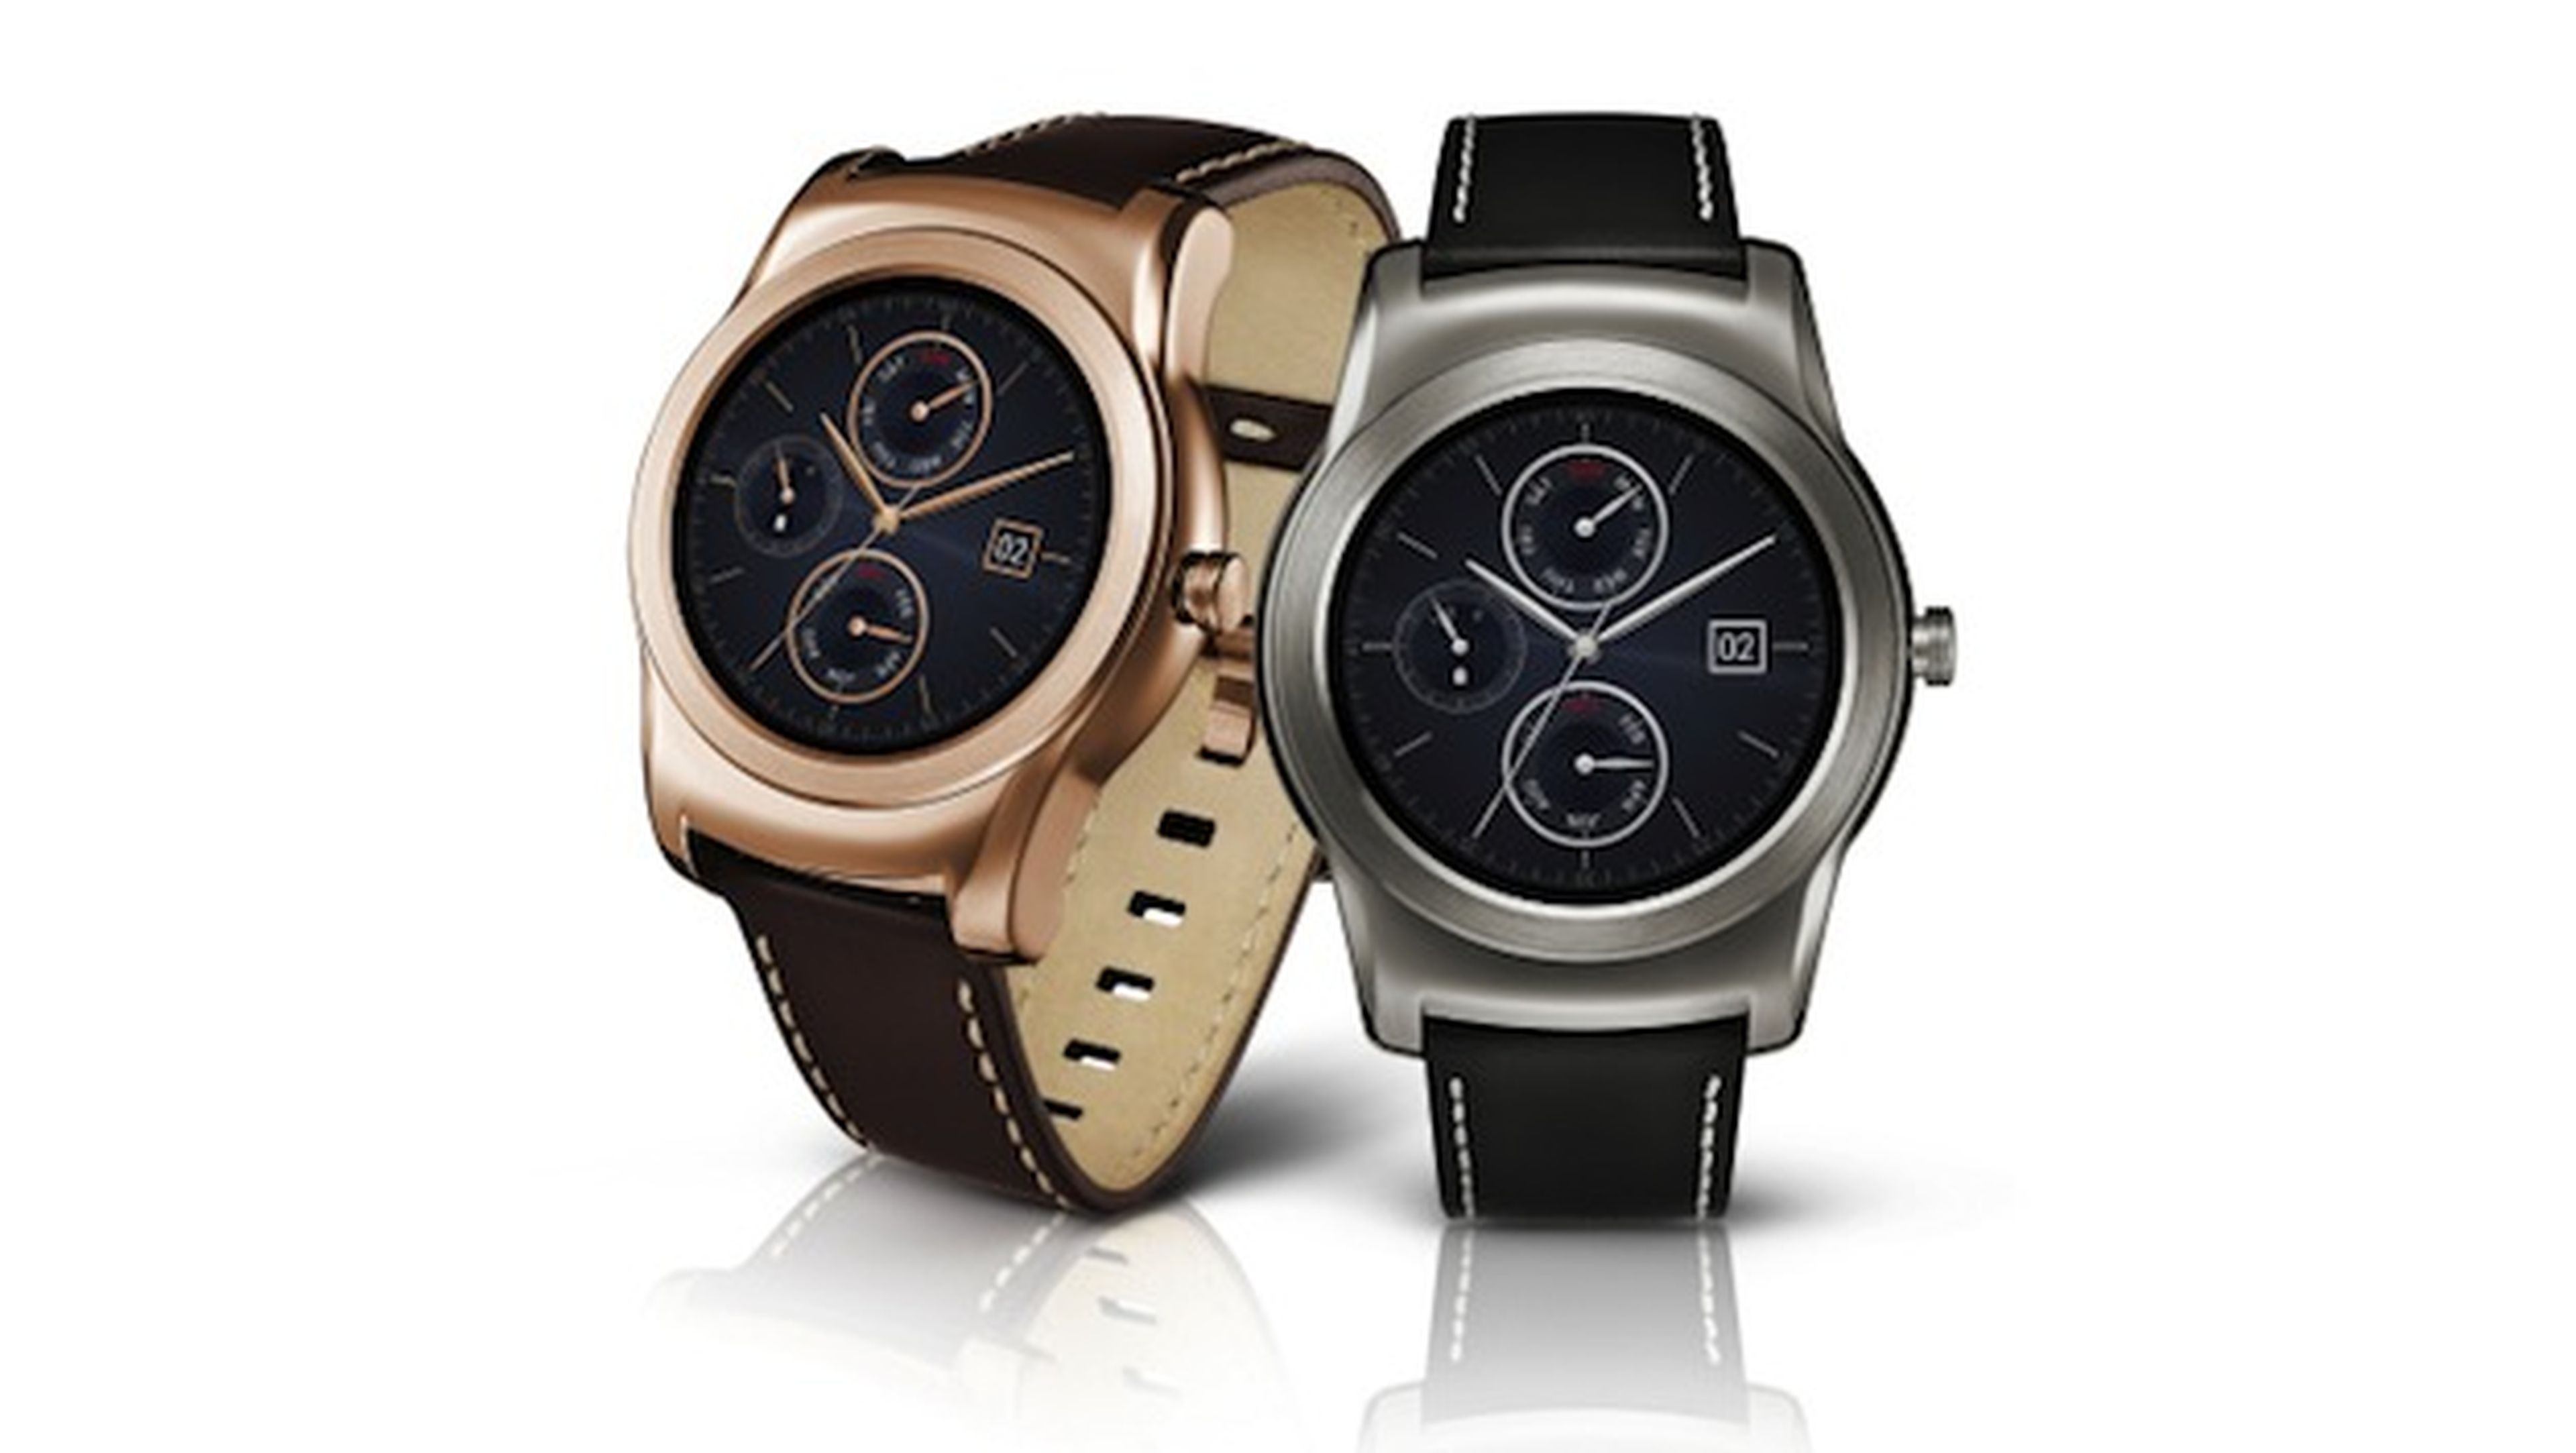 Tregua Apariencia aprobar LG Urbane, smartwatch de lujo para competir con Apple Watch | Computer Hoy